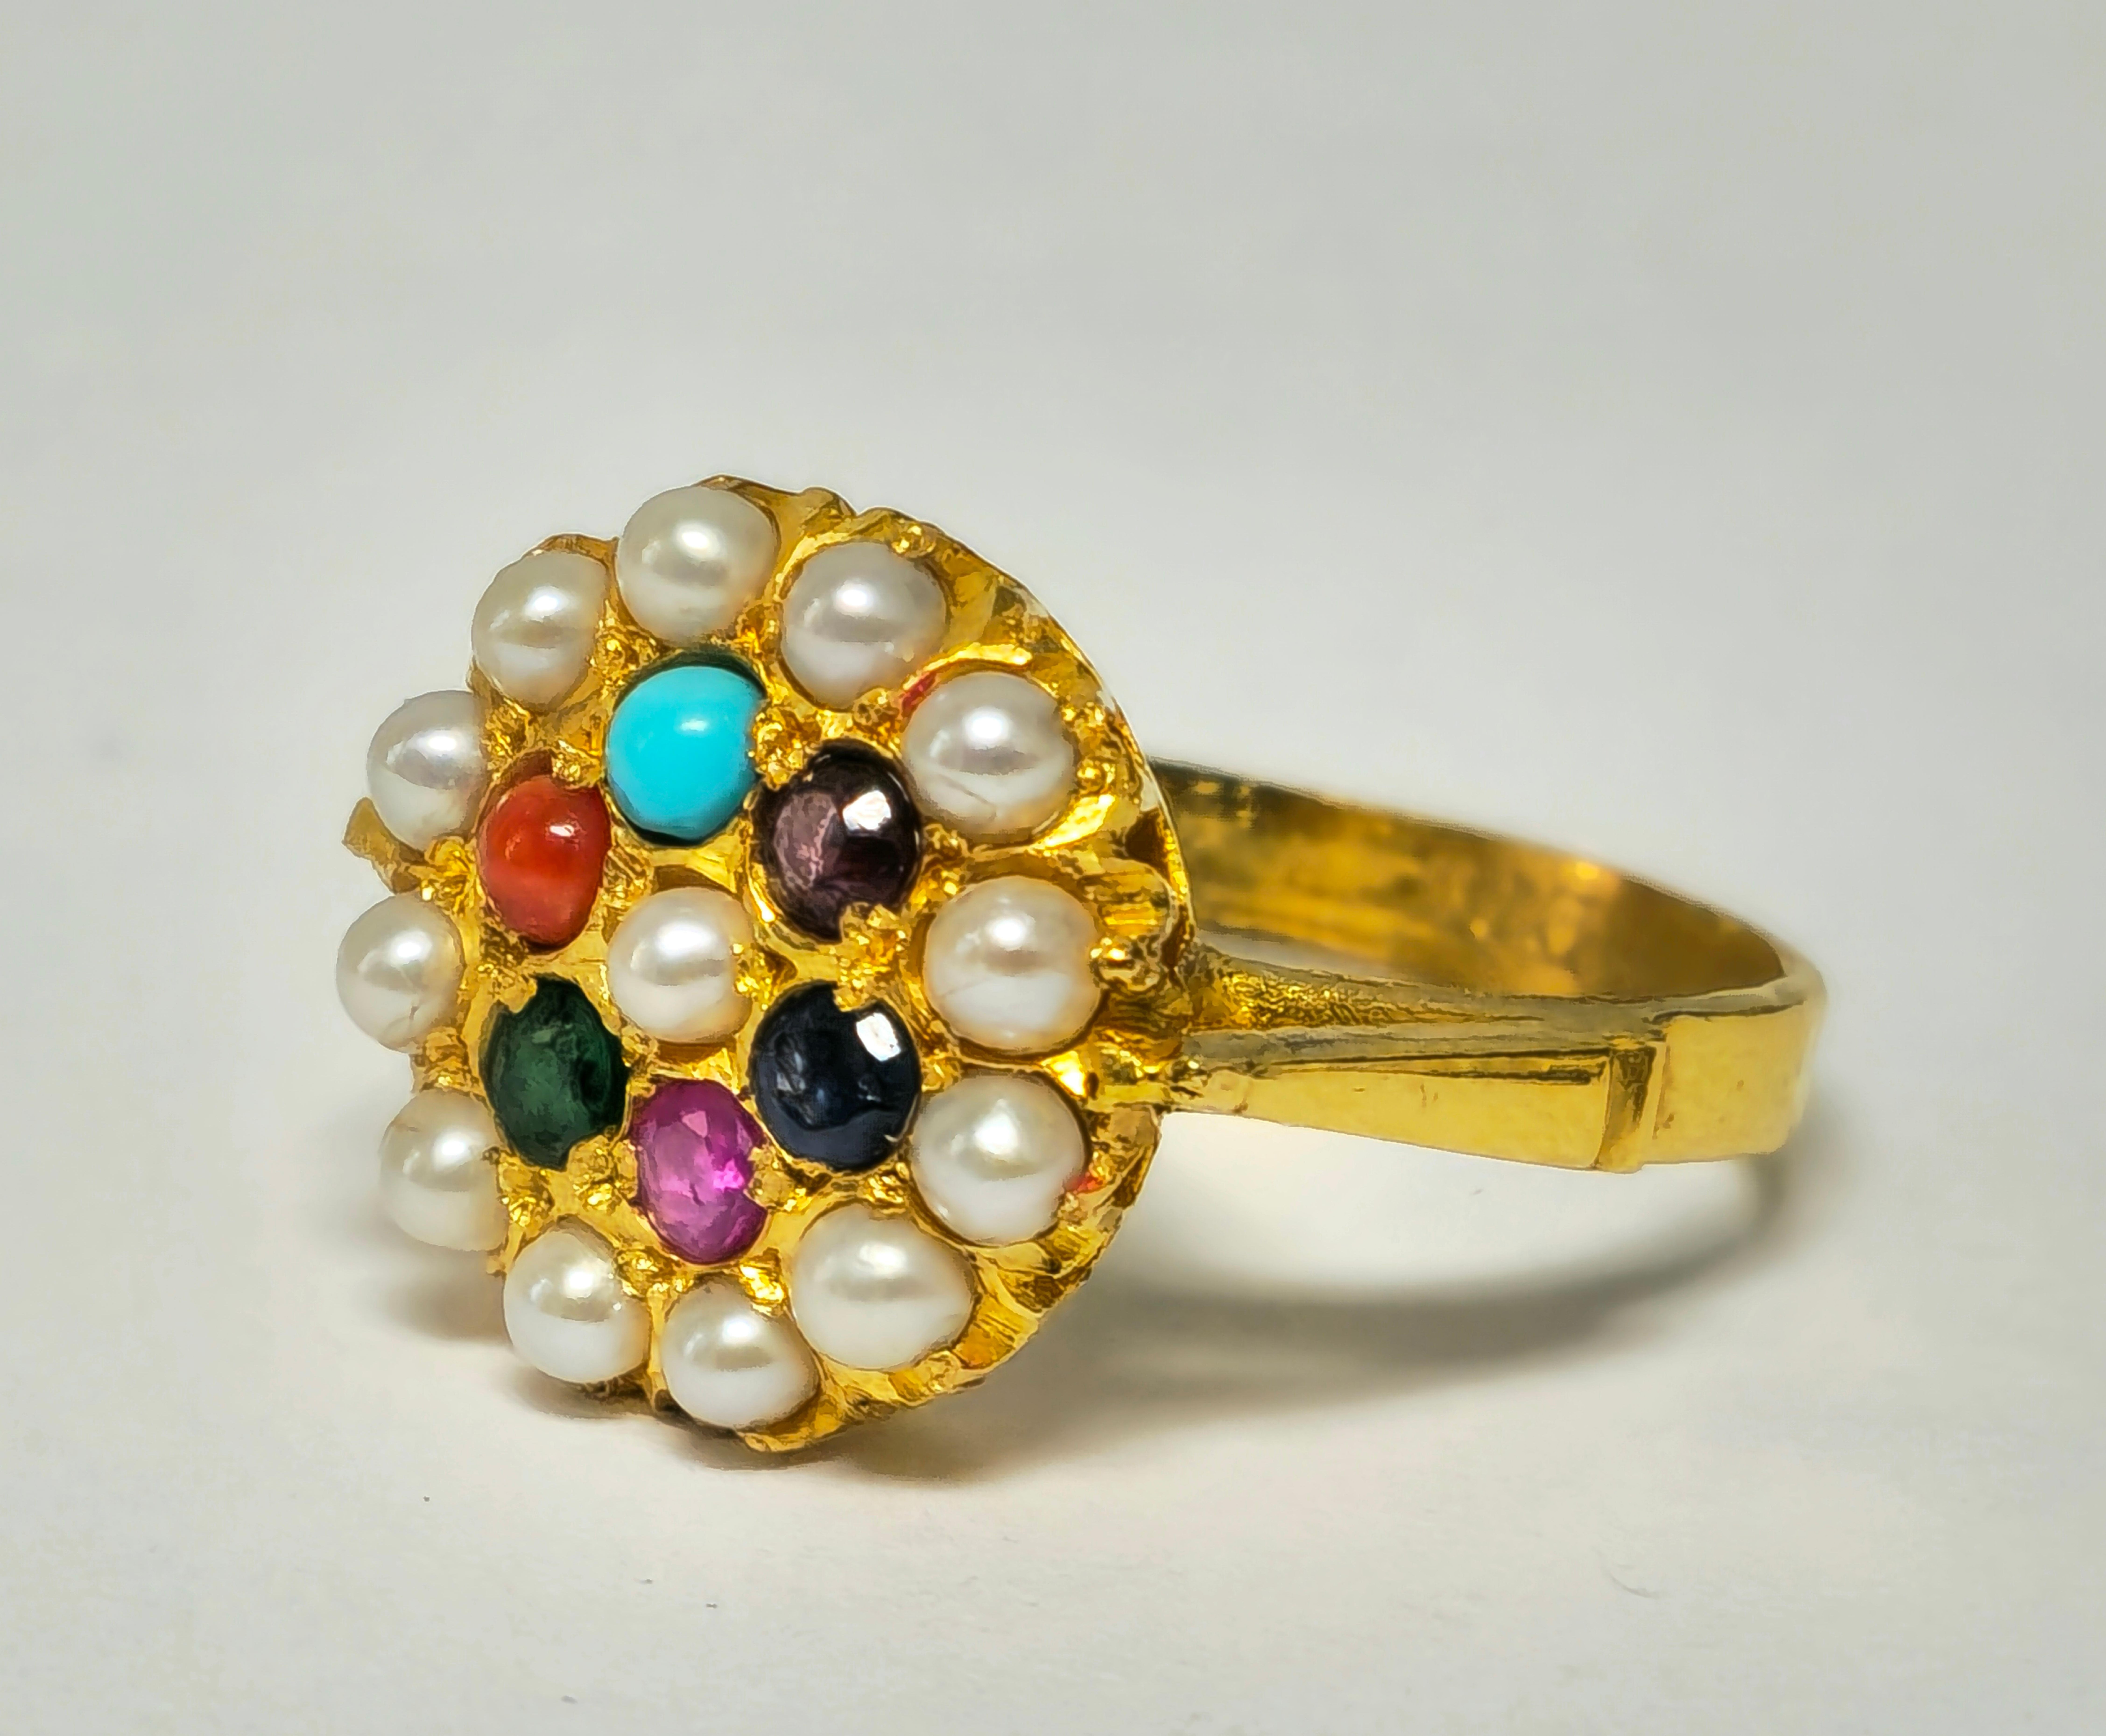 Schwelgen Sie in exotischer Eleganz mit diesem bezaubernden Ring aus glänzendem 22-karätigem Gelbgold. Der Ring ist mit einer Reihe von leuchtenden Edelsteinen besetzt, darunter Perlen, Smaragde, Rubine, blaue Saphire, Korallen, rosa Saphire und